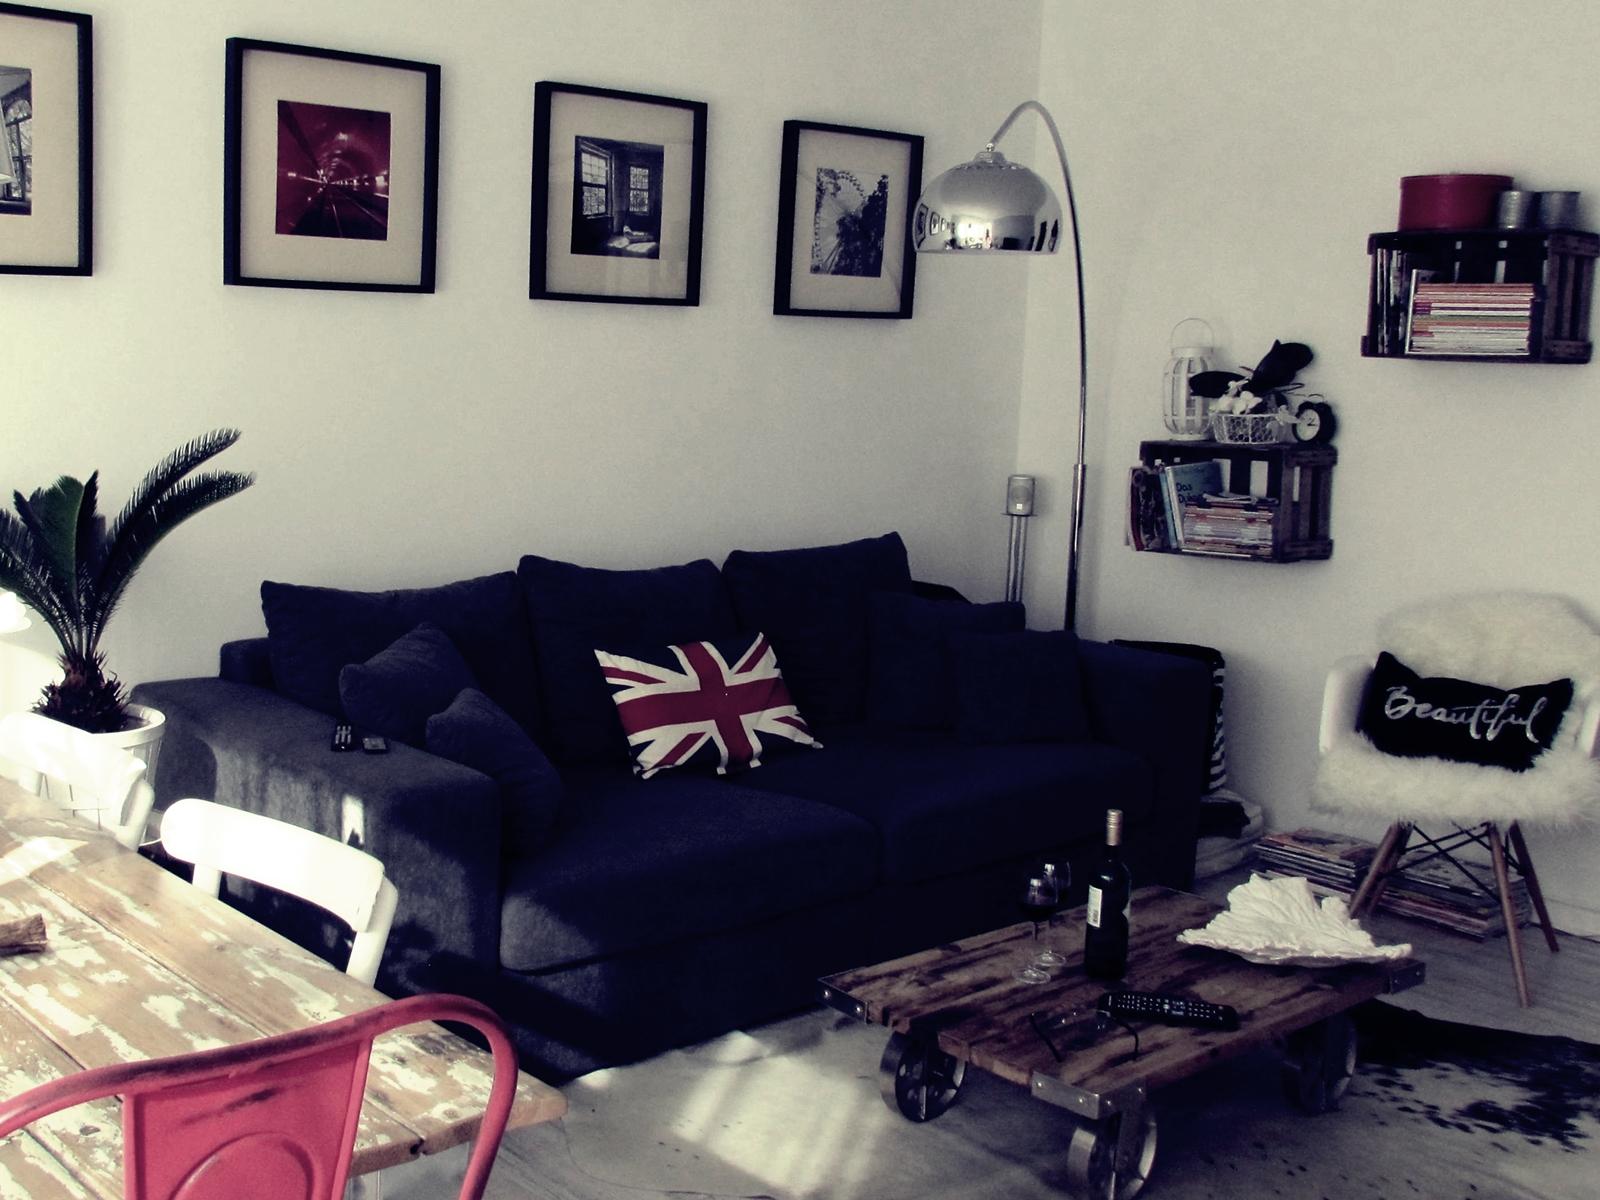 Livingroom im Industrie Look #bogenlampe #wohnzimmer #obstkiste #wandbild #xxlsofa #industriedesigncouchtisch ©roomrevolution